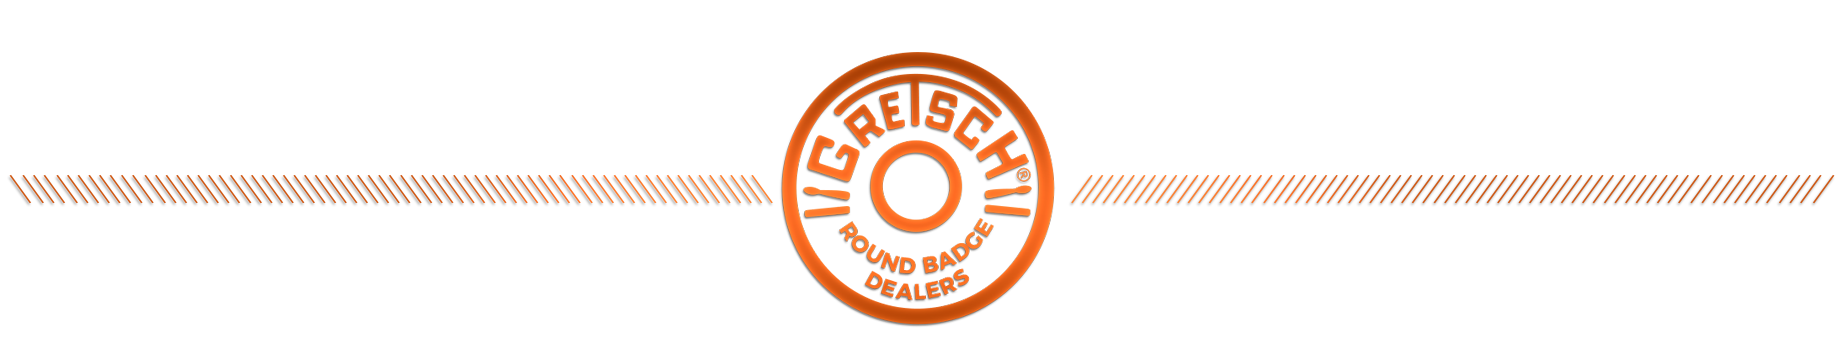 Gretsch Round Badge Dealers Logo